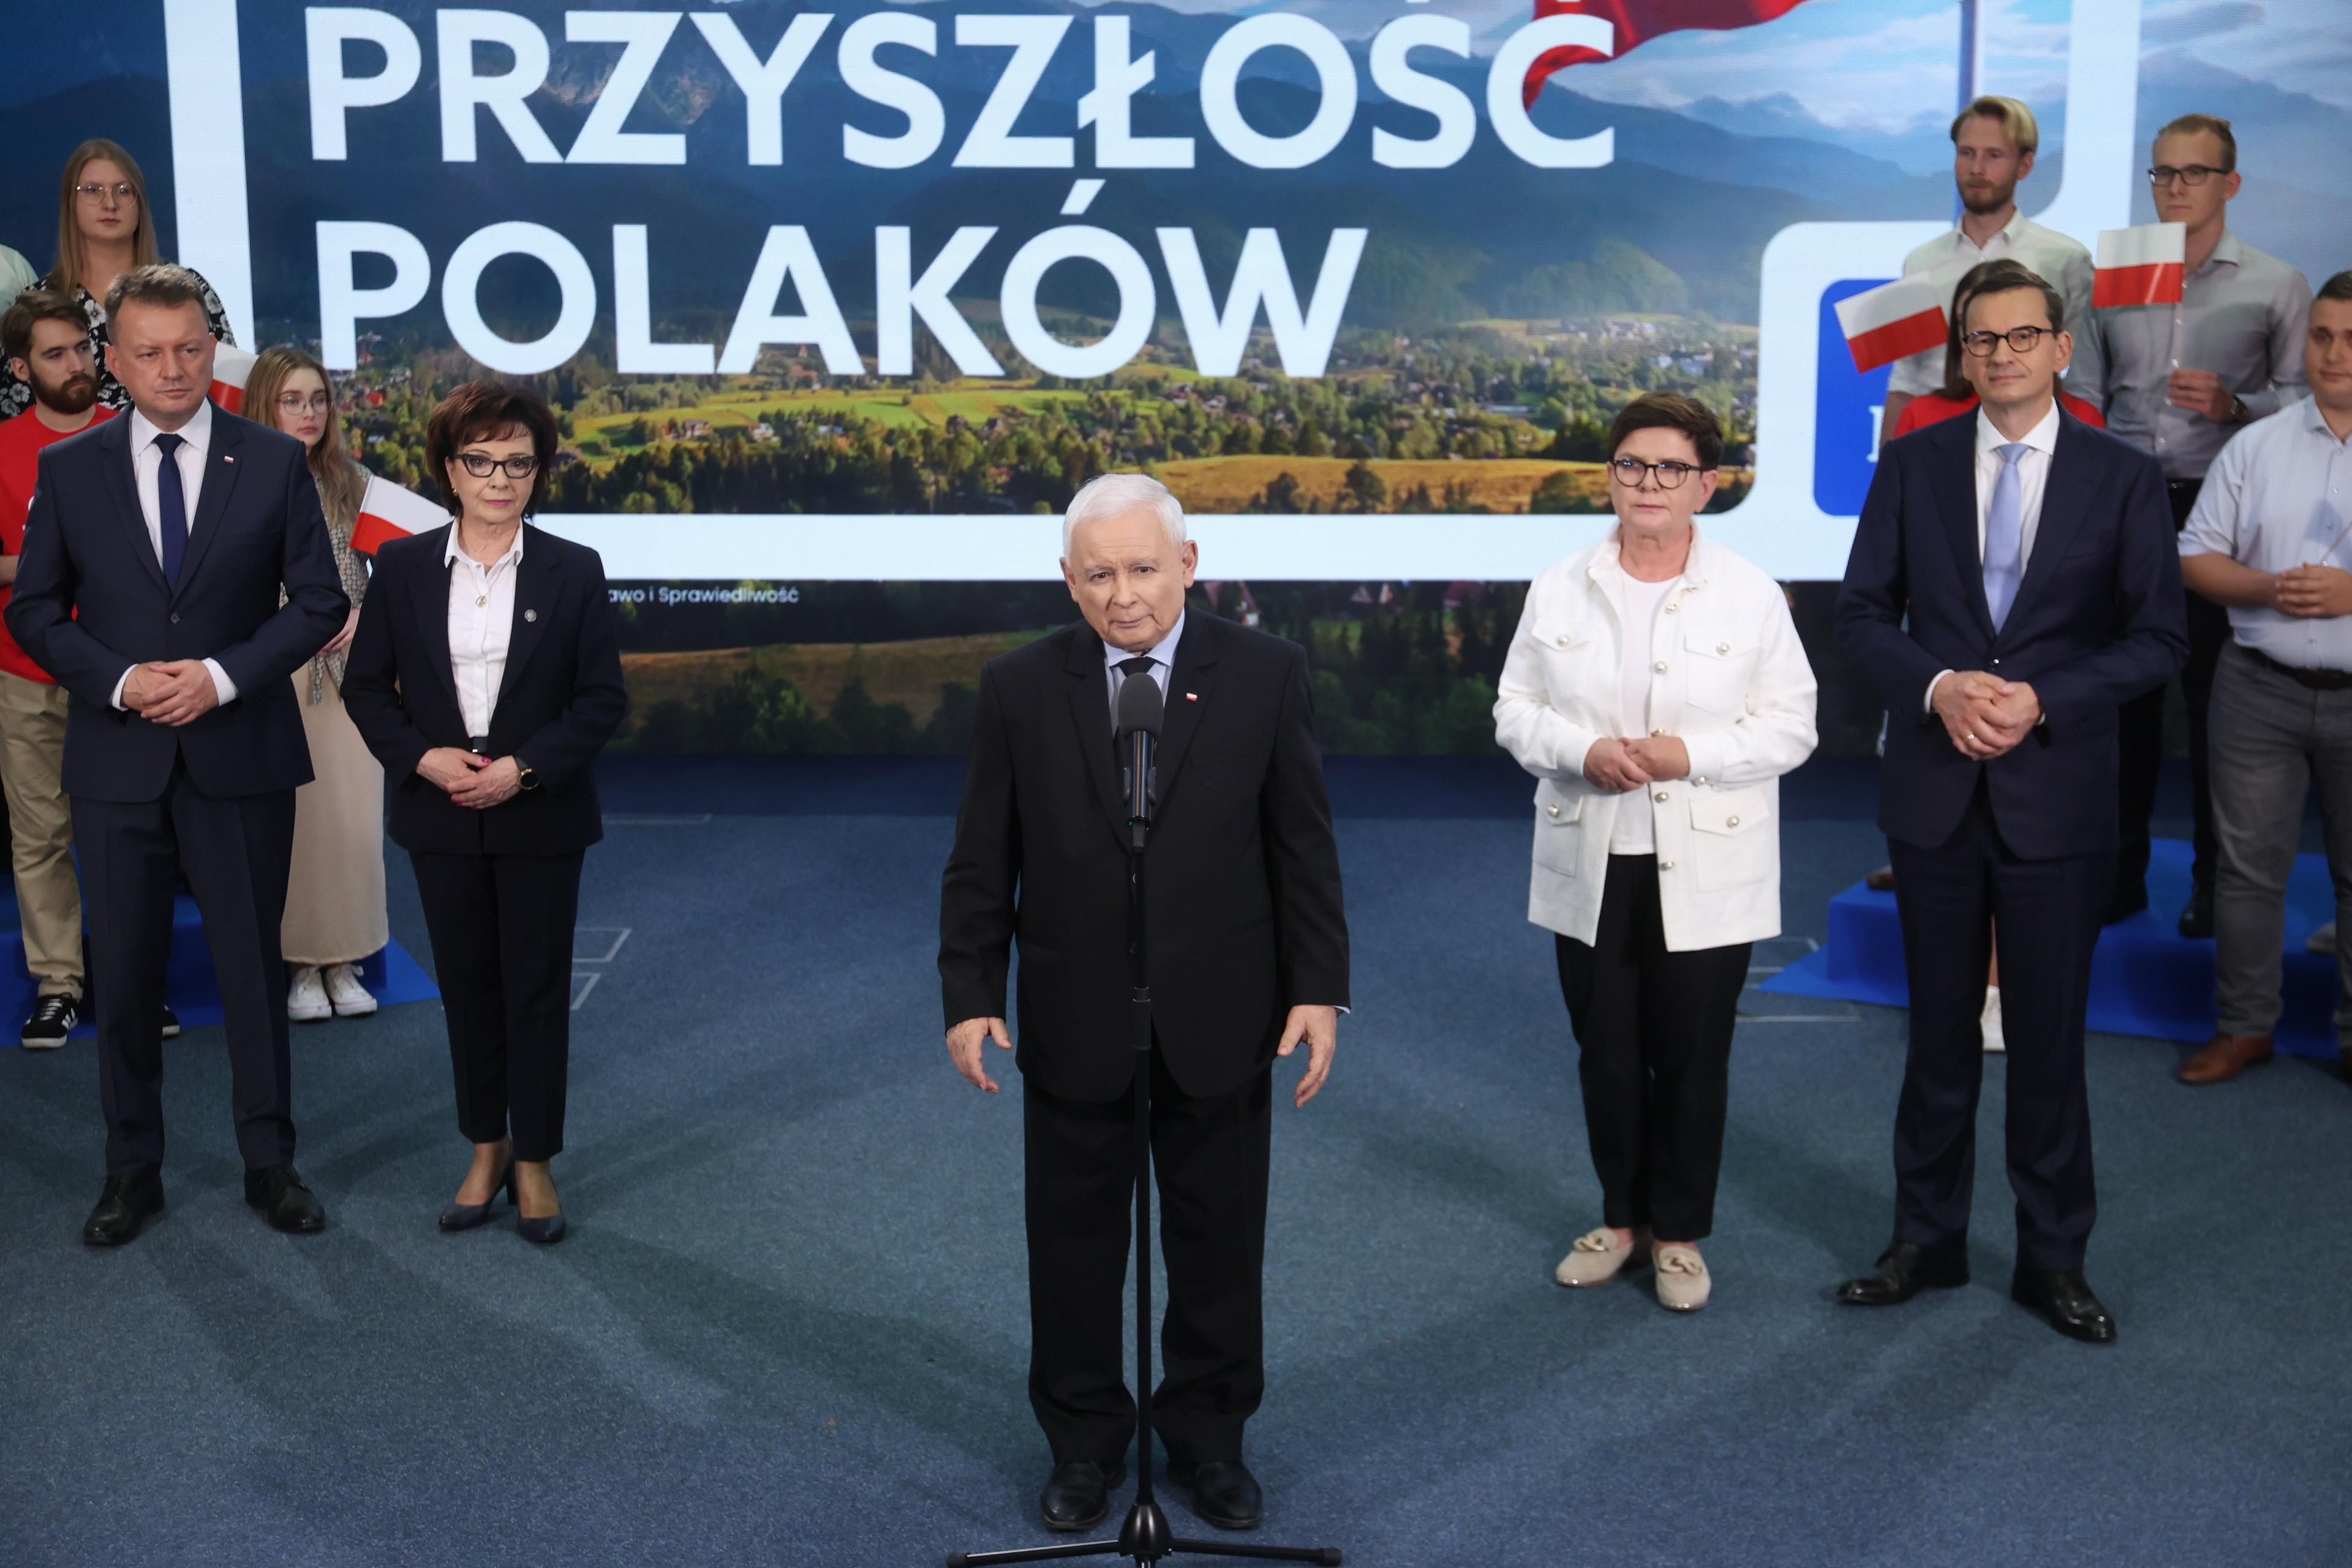 Mężczyzna, starszy, siwy, niski, Jarosław Kaczyński , stoi na scenie na tle hasła wyborczego PiS "Bezpieczna przyszłość Polaków'